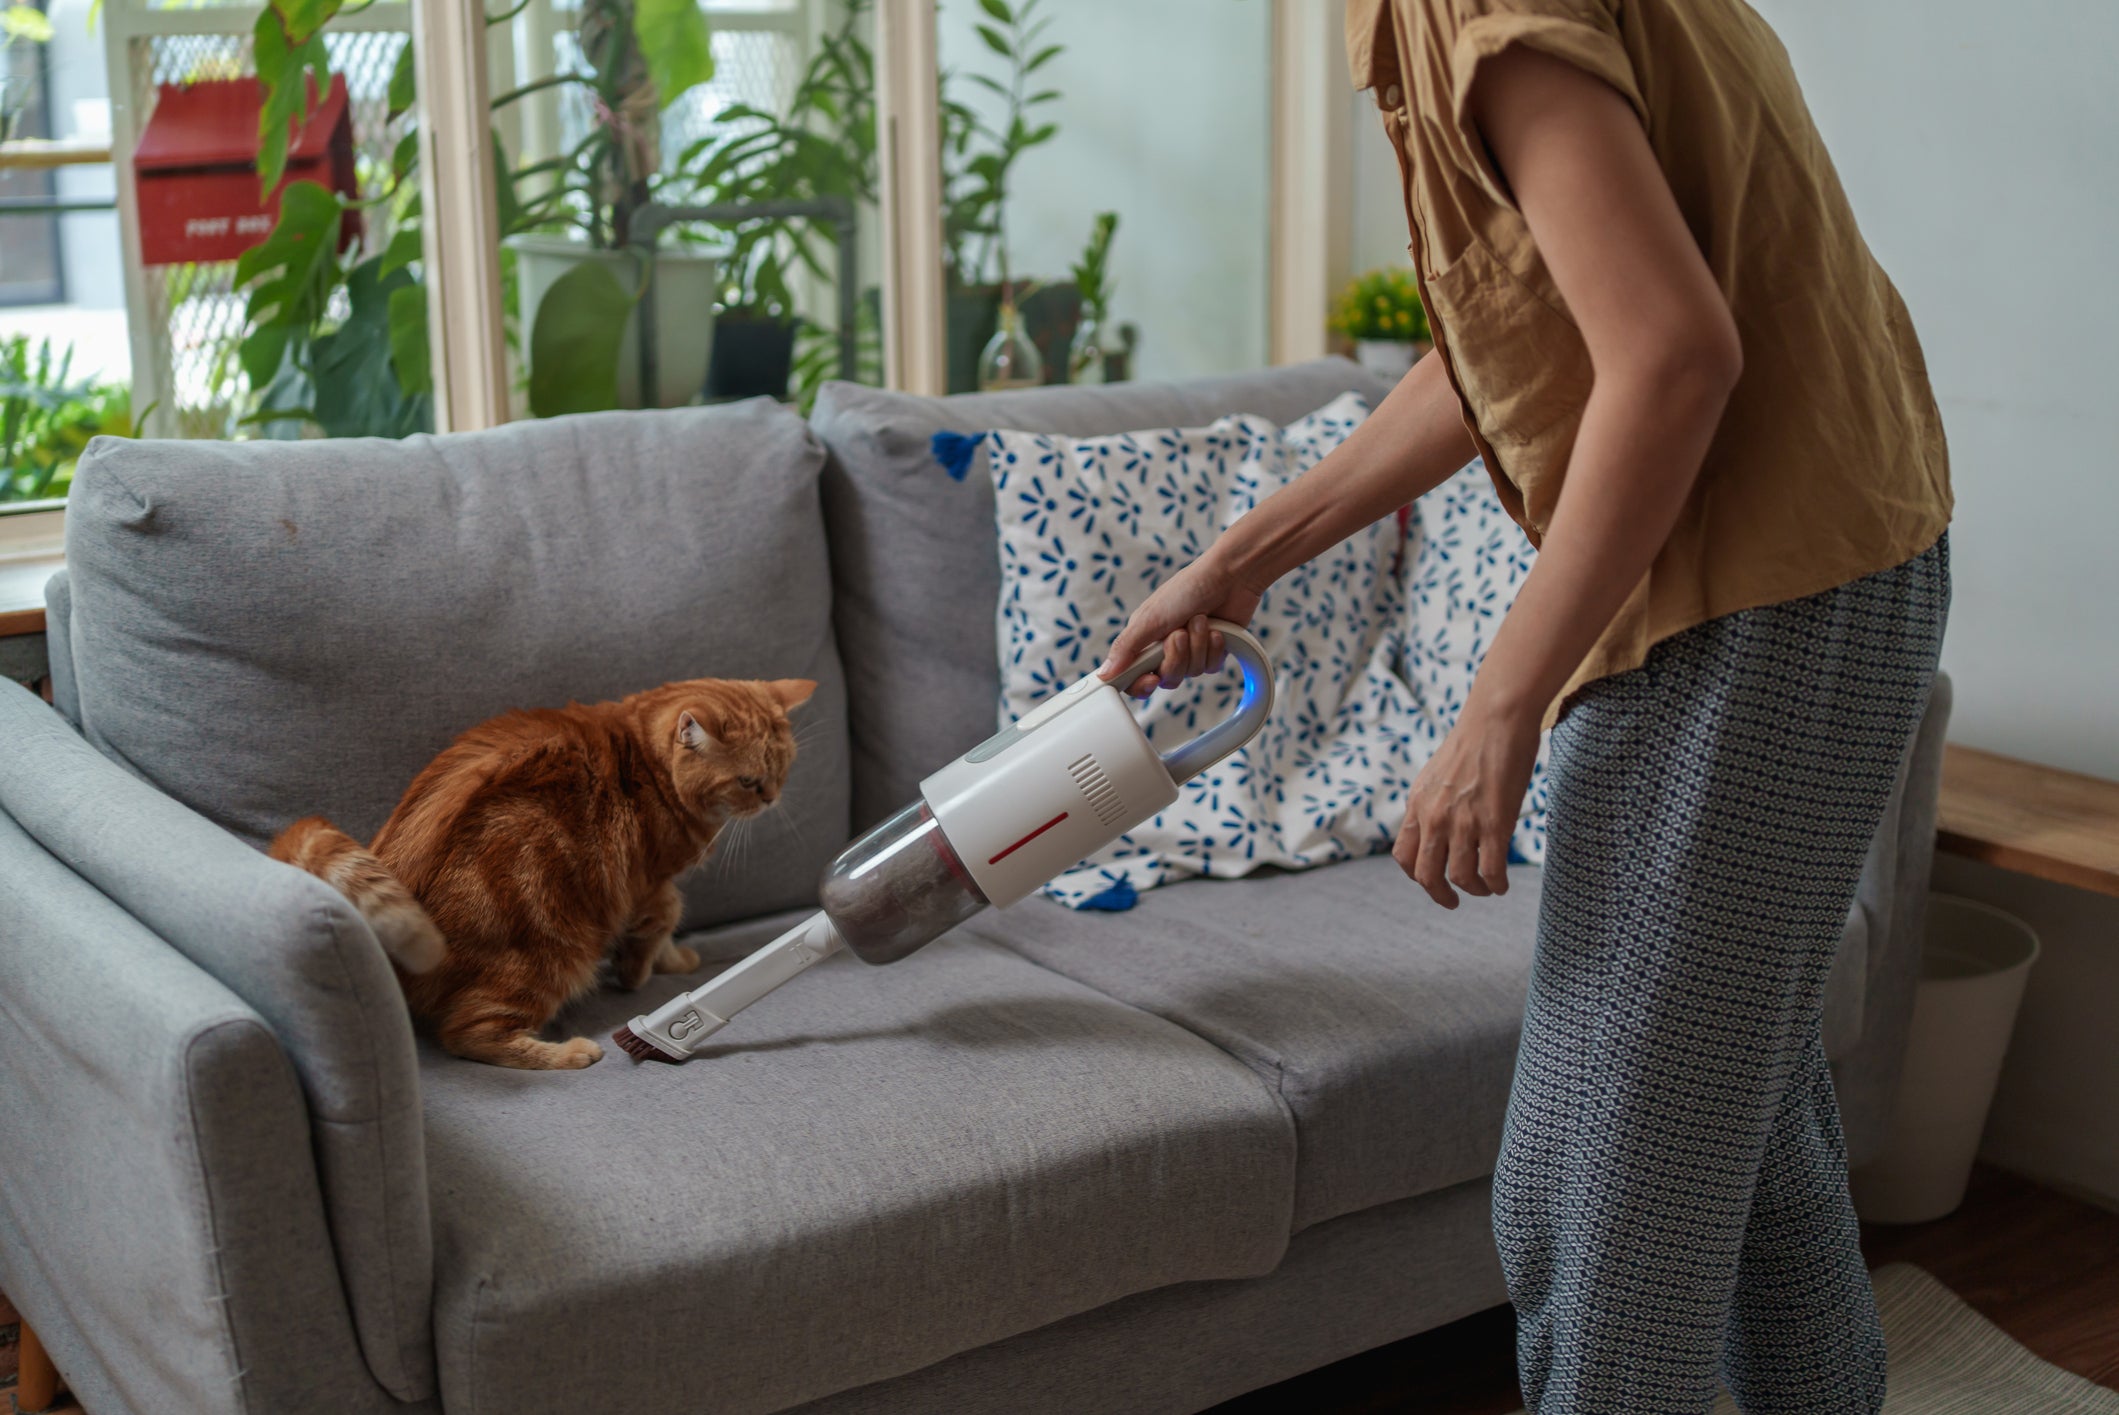 pessoa limpando sofá com aparelho enquanto gato laranja olha de perto